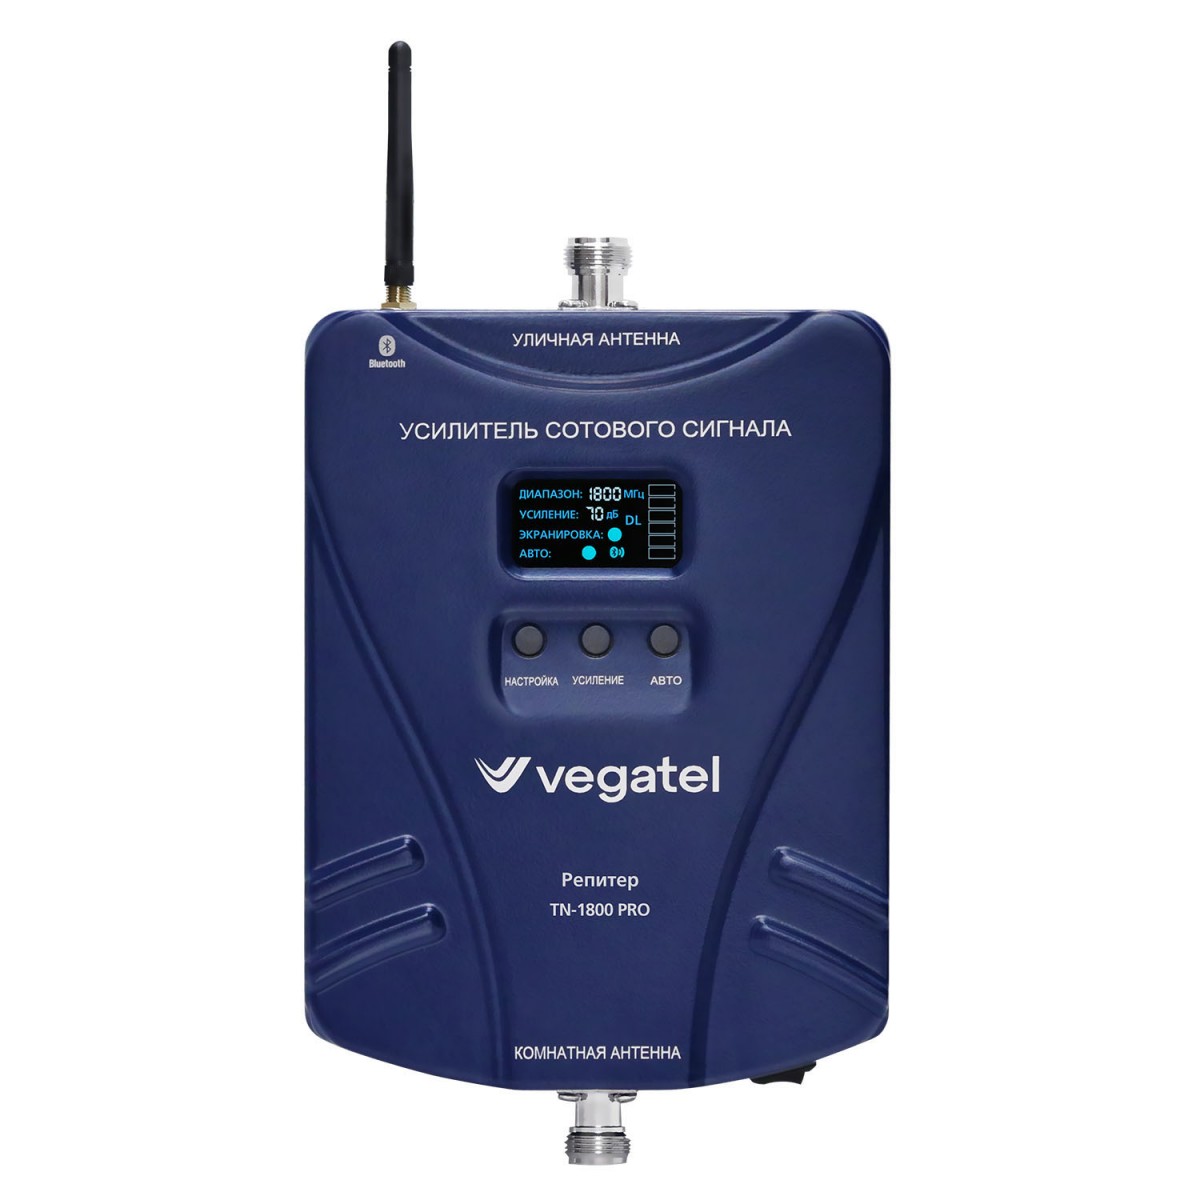 Детальное изображение товара "Комплект усиления сотовой связи Vegatel TN-1800 PRO" из каталога оборудования Антенна76